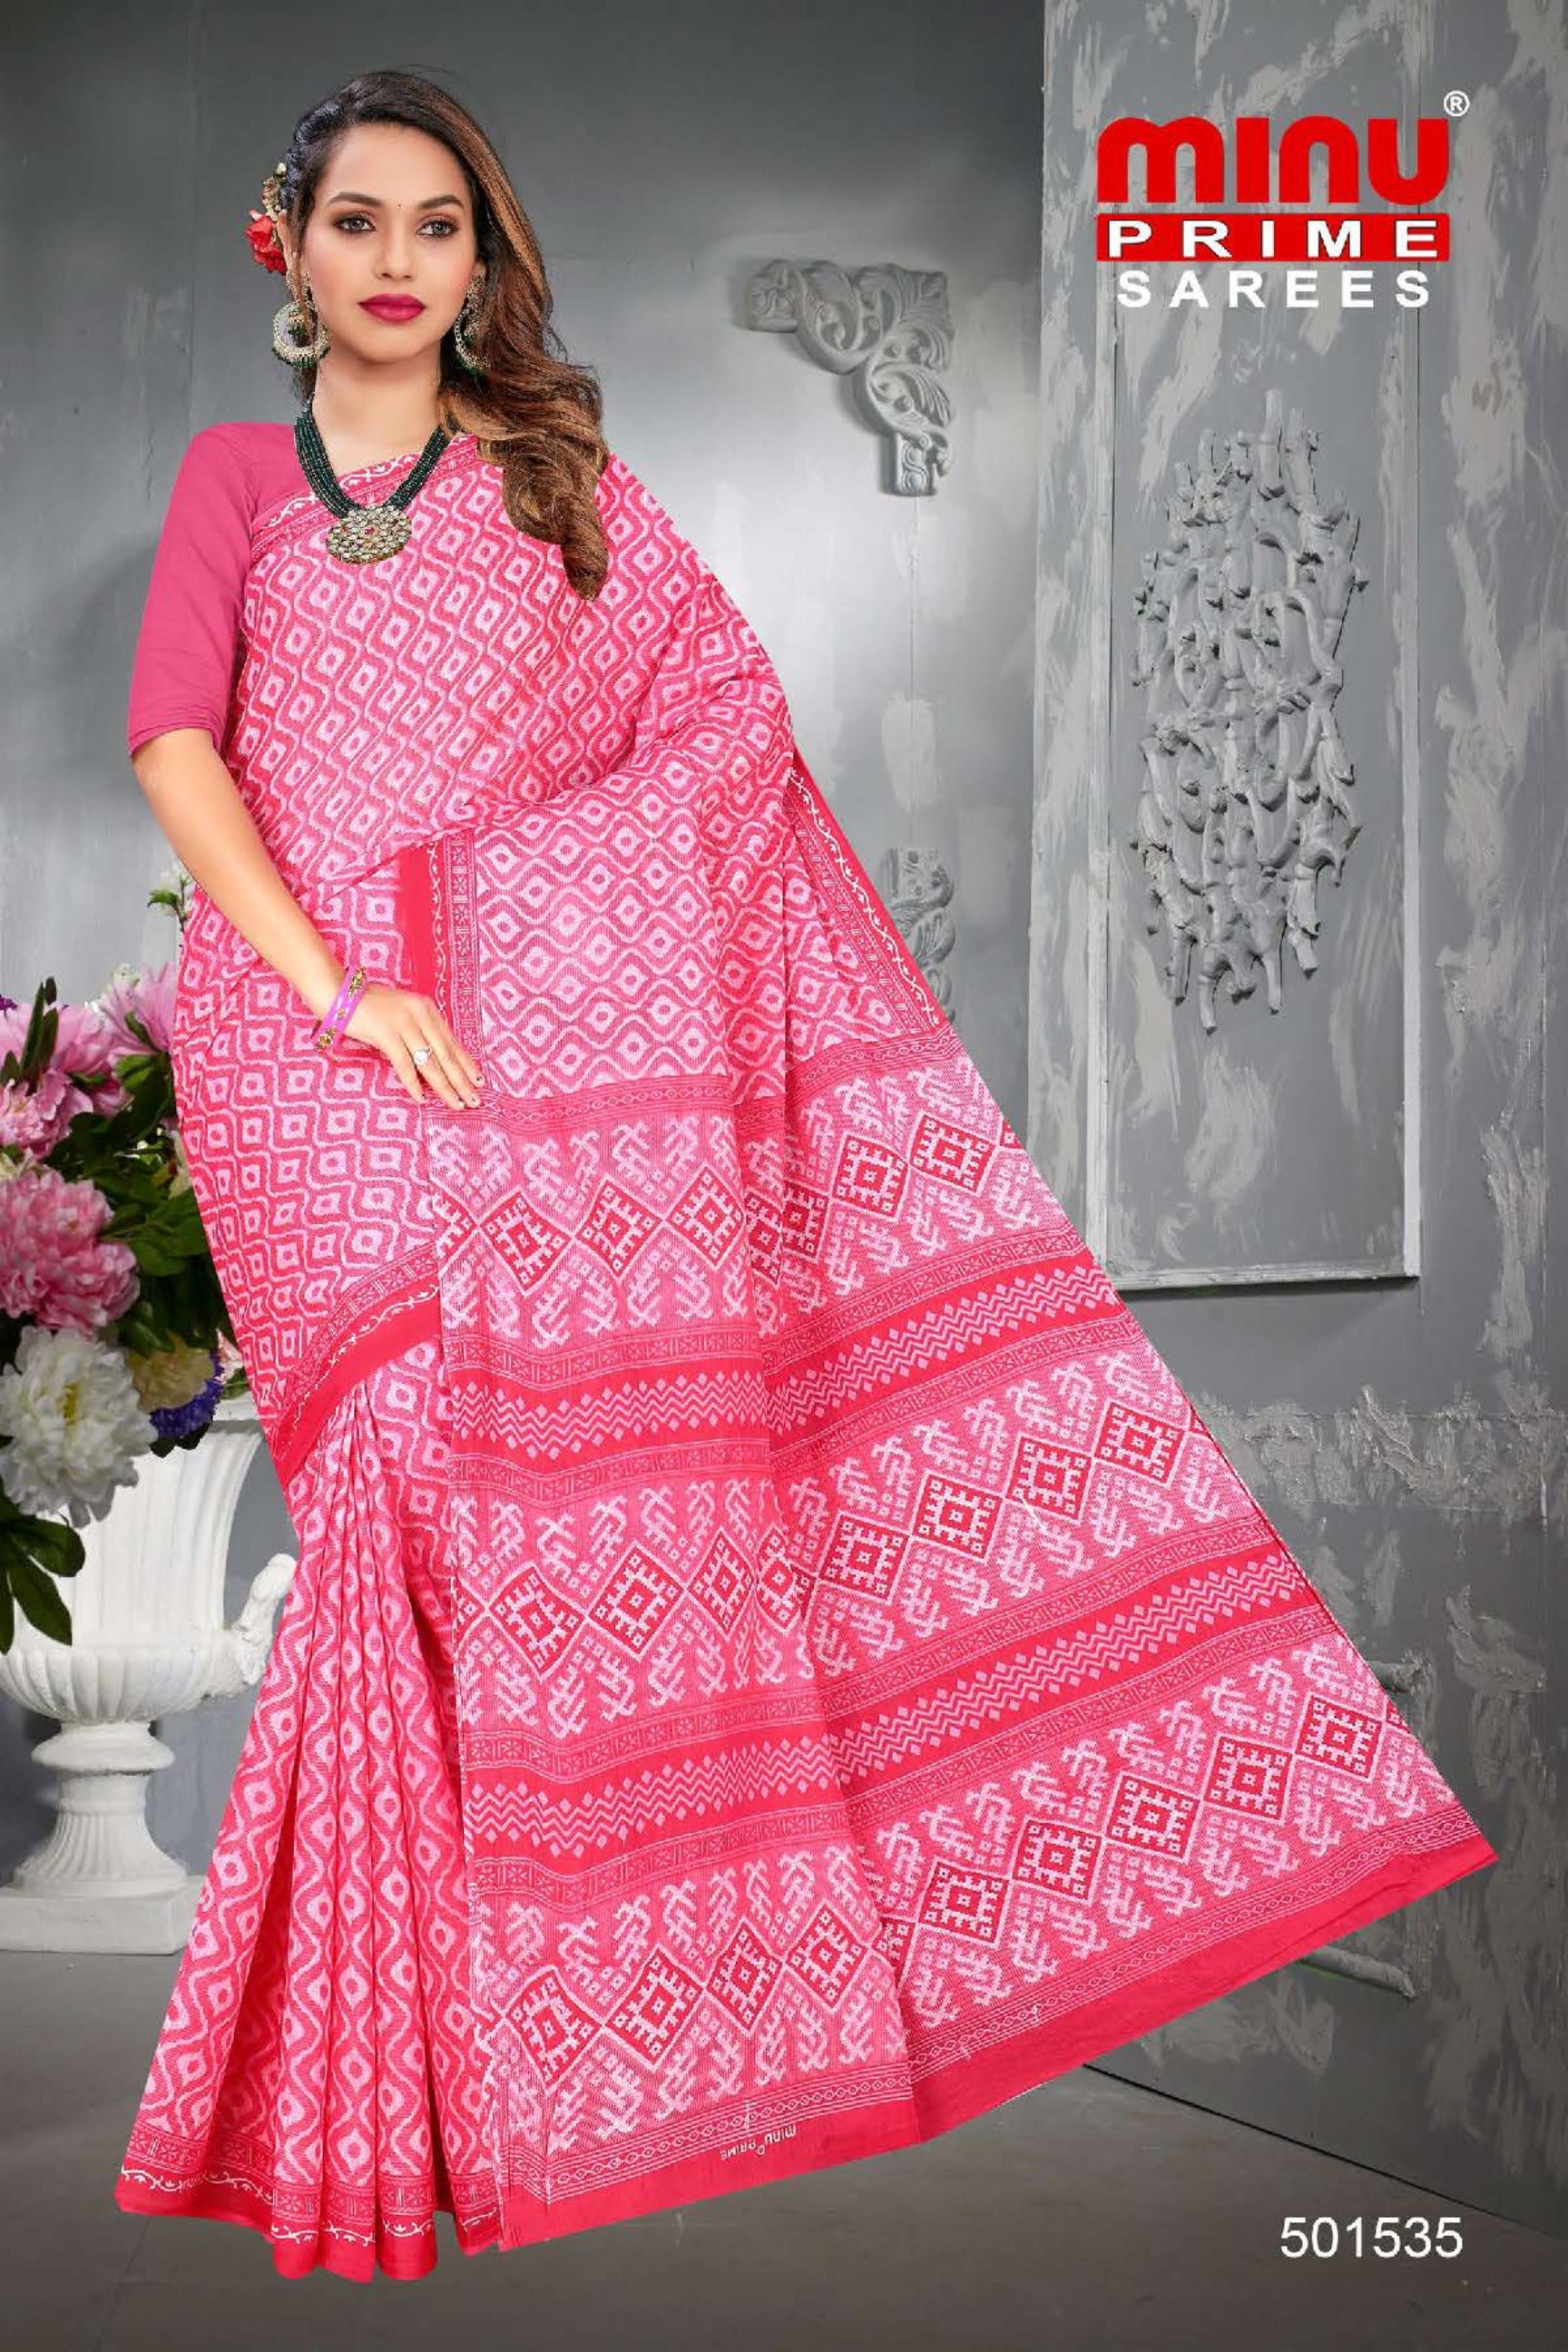 Pink printed saree from direct manufacturer of sarees 